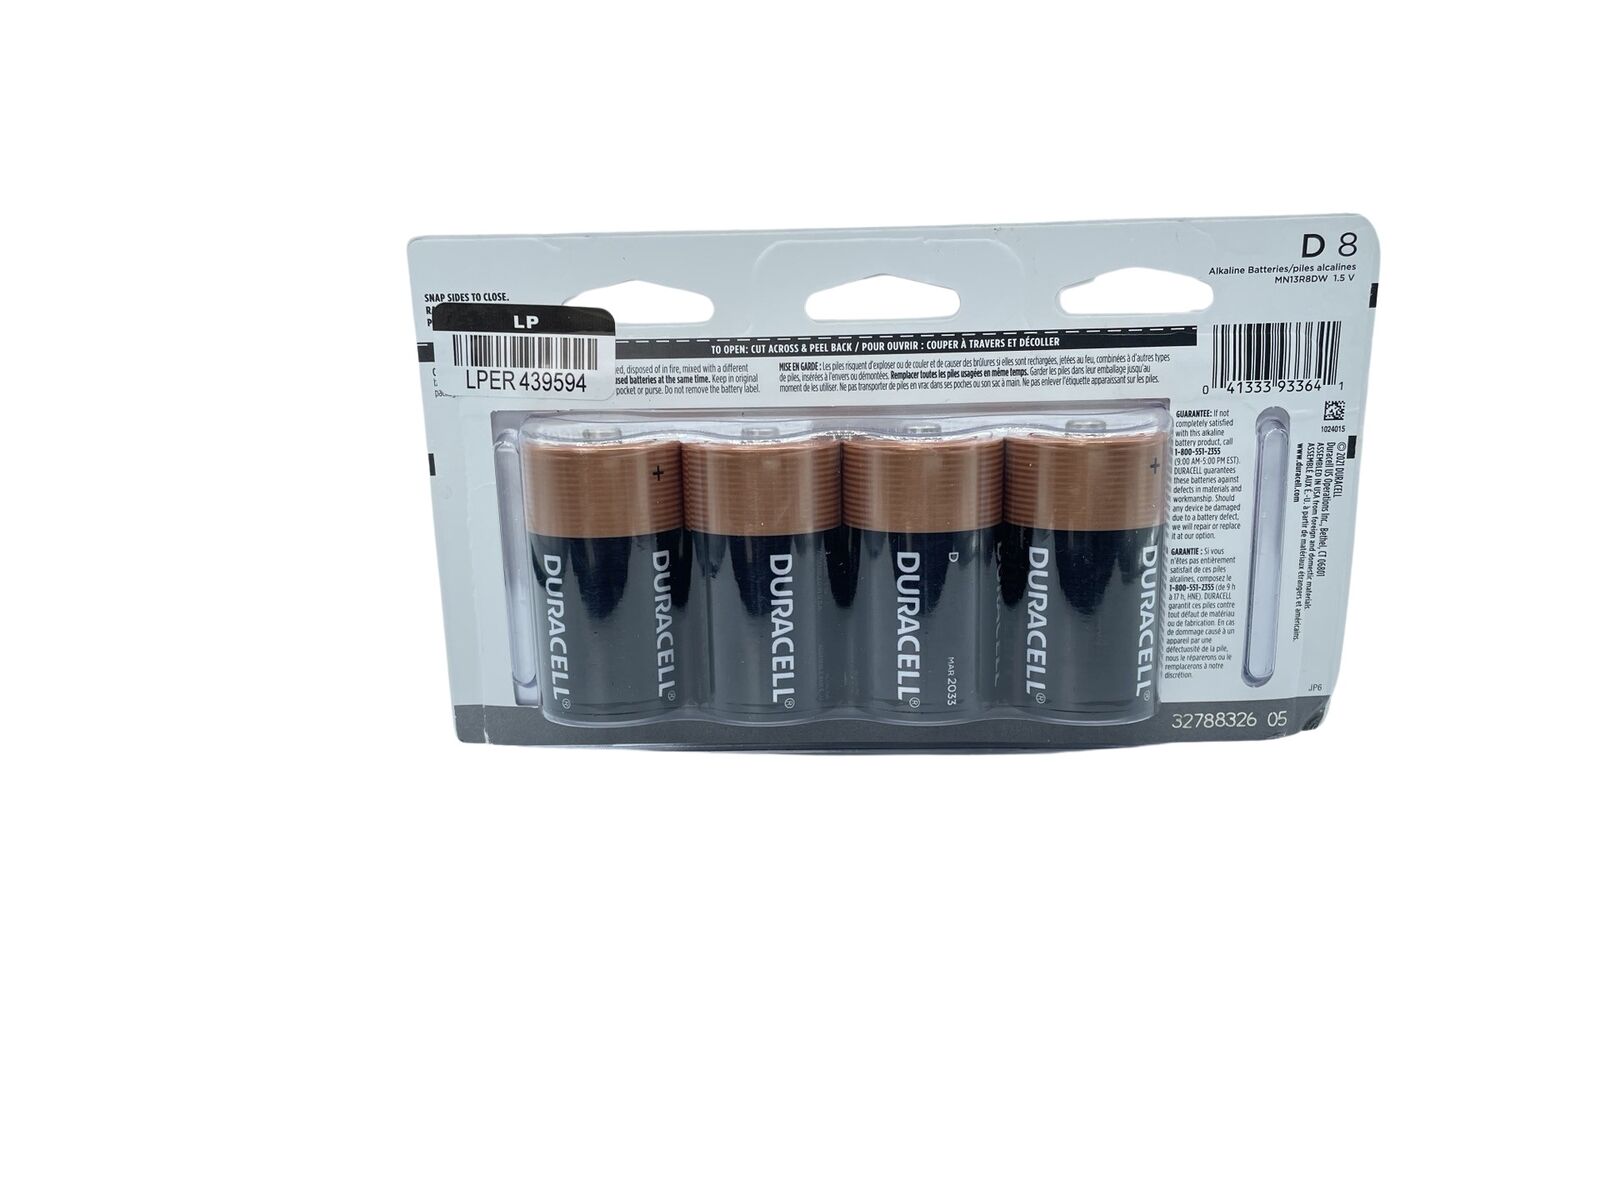 Duracell Coppertop D Batteries - 8pk Alkaline Battery